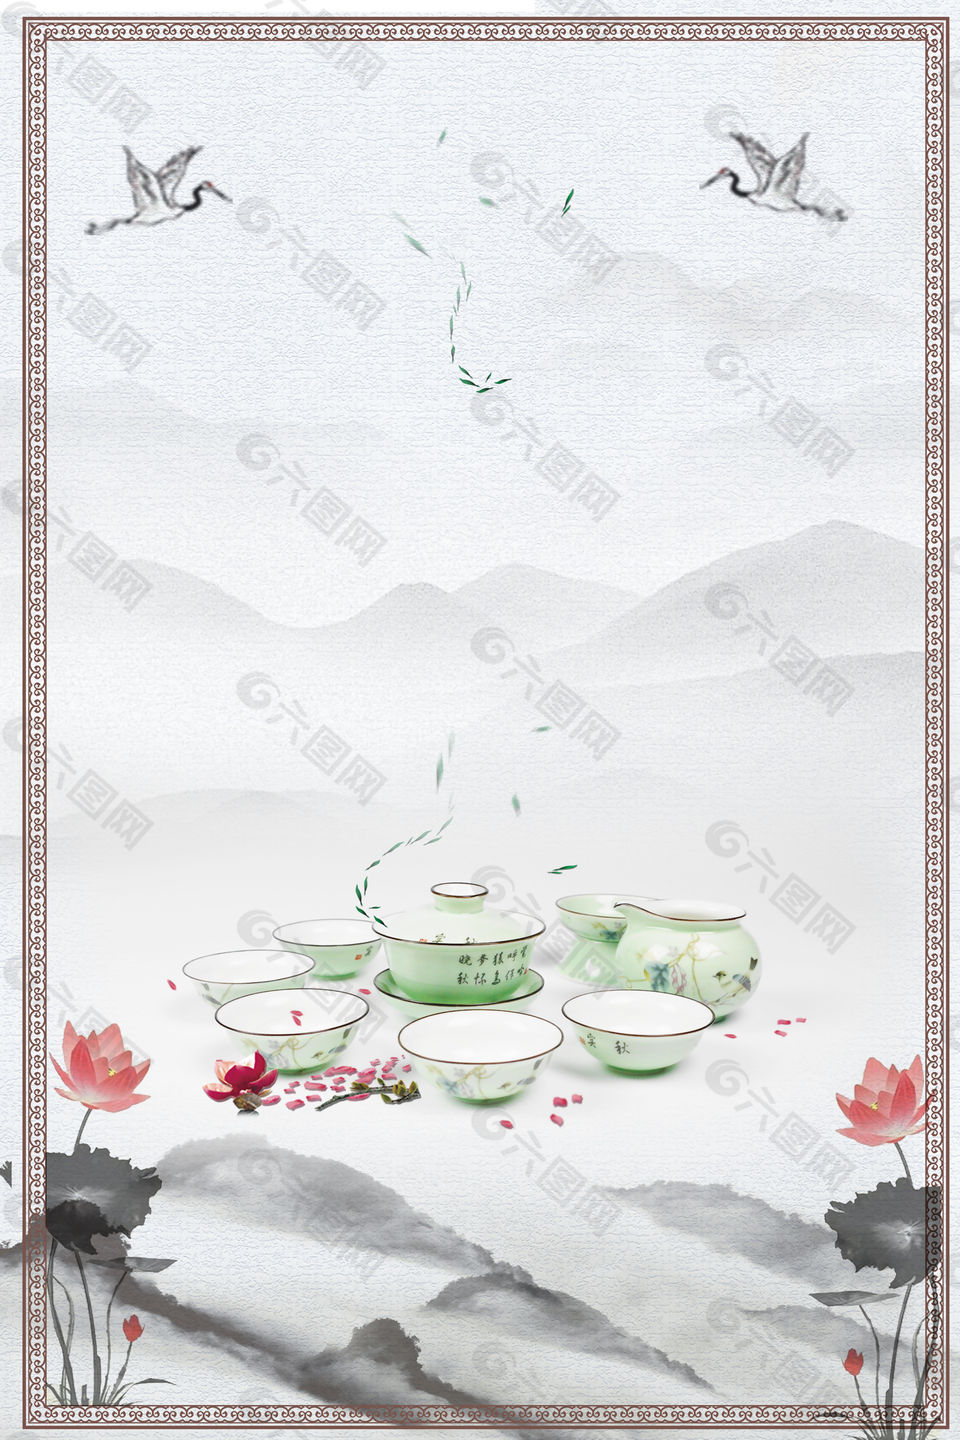 中国风礼品茶叶背景